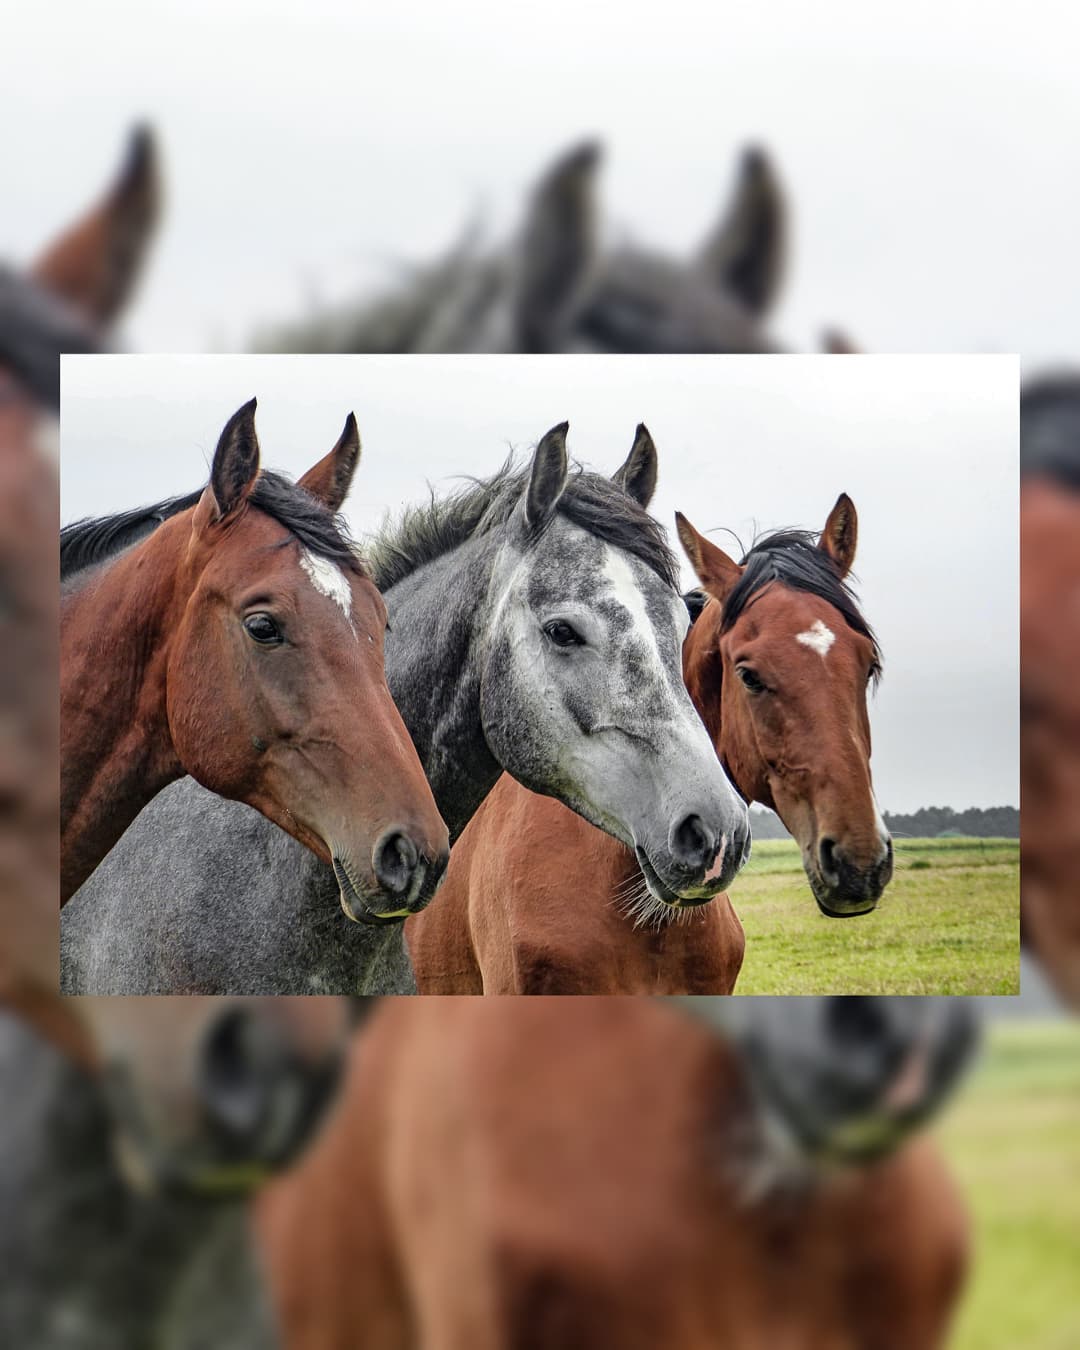 Buongiorno Cavallini, avete già visto gli aggiornamenti sulla nostra pagina? 🐎

#horse #horsesofinstagram #horses #cavalli #cavallo #ippica #ippicaitaliana #love #animals #animal #animali